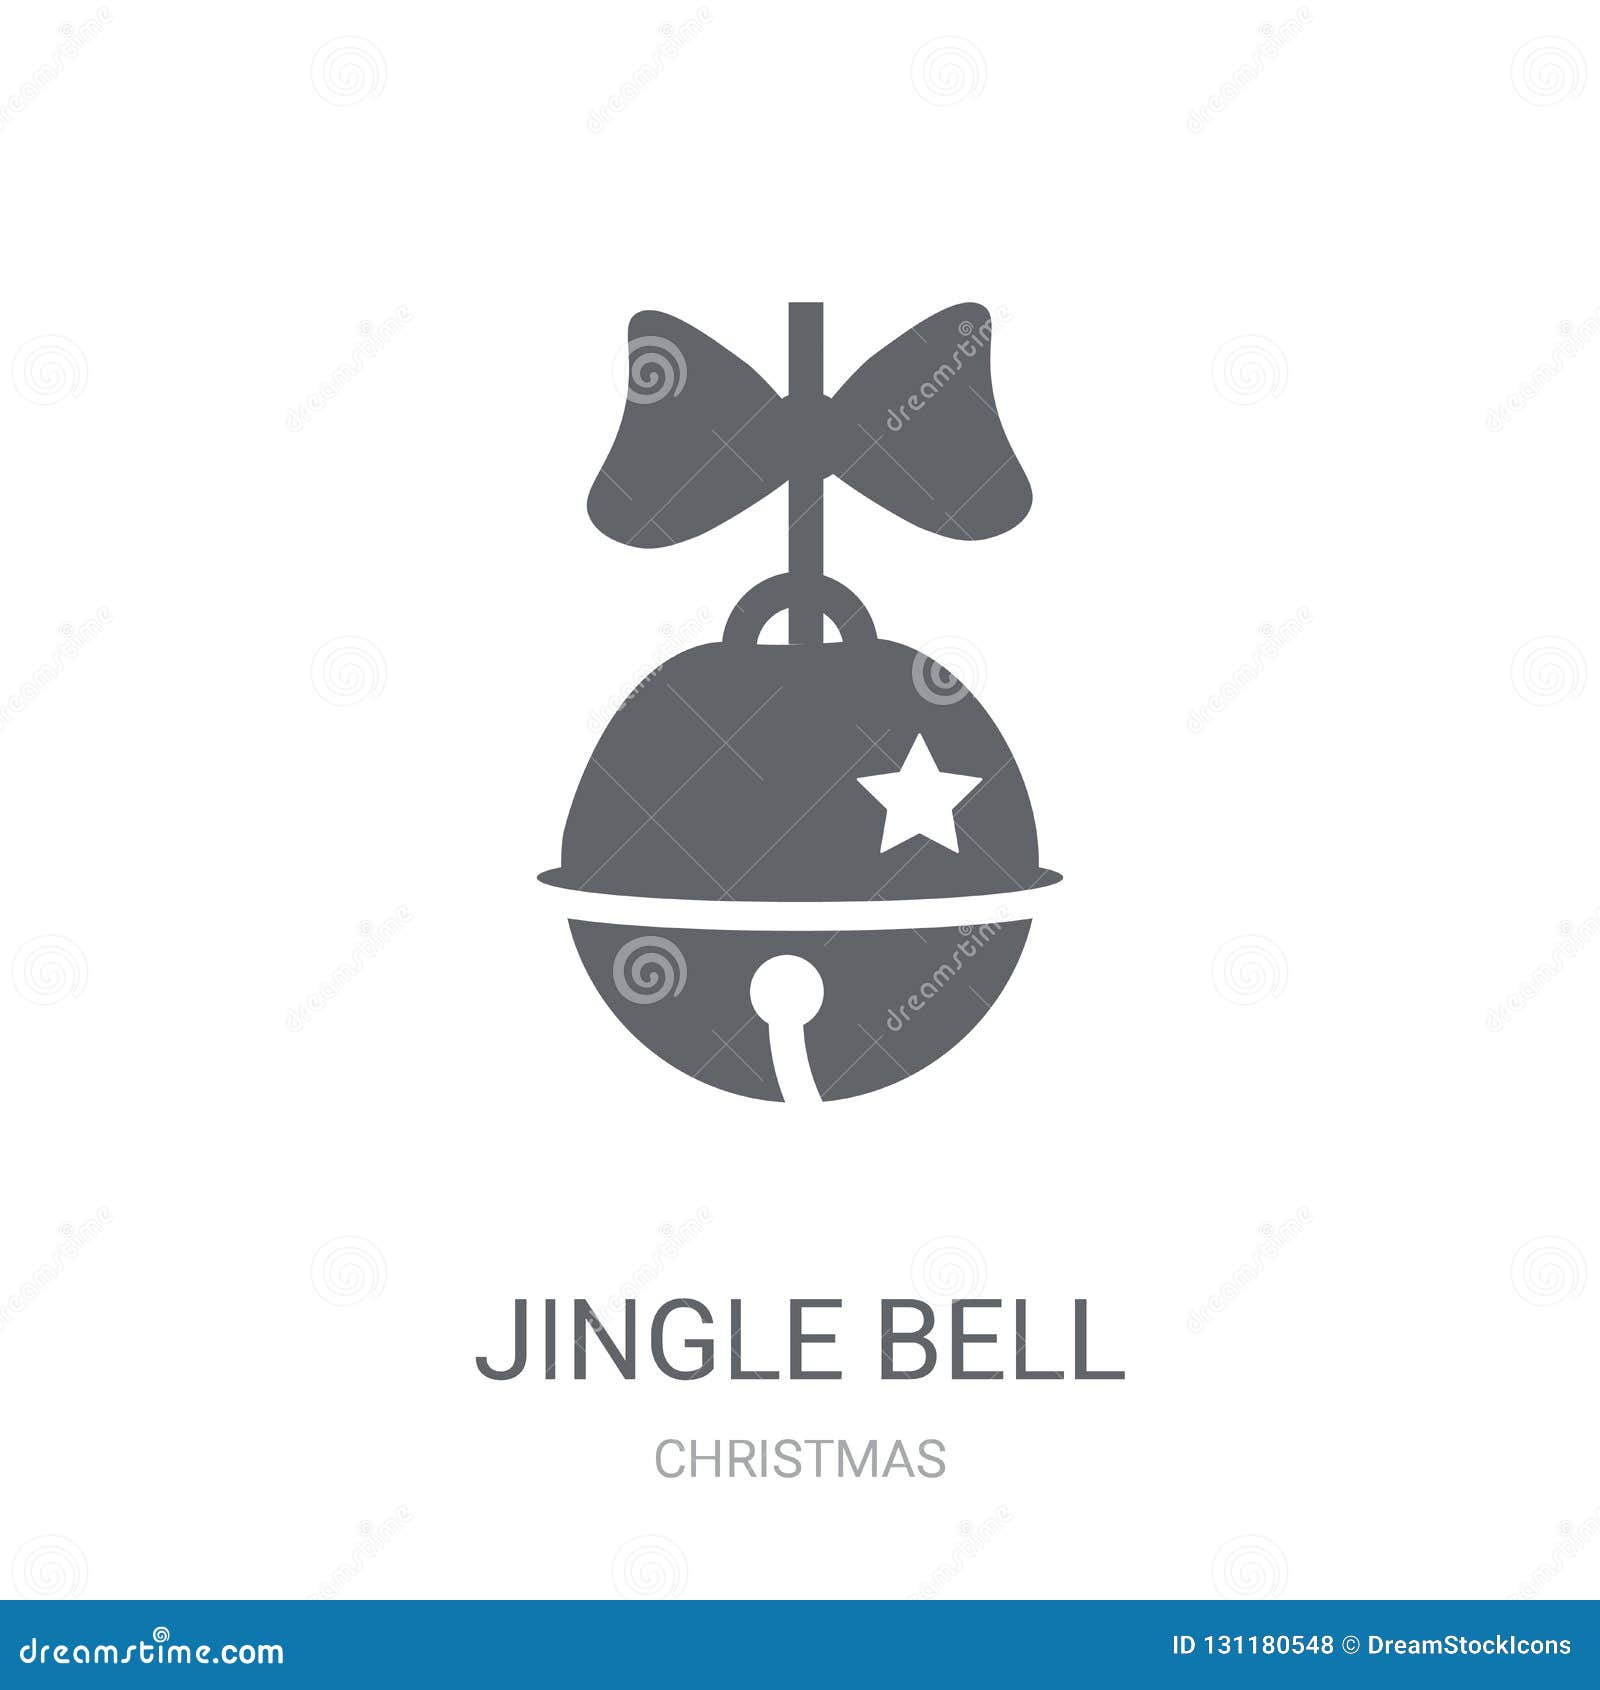 Free Vector  Jingle bells set